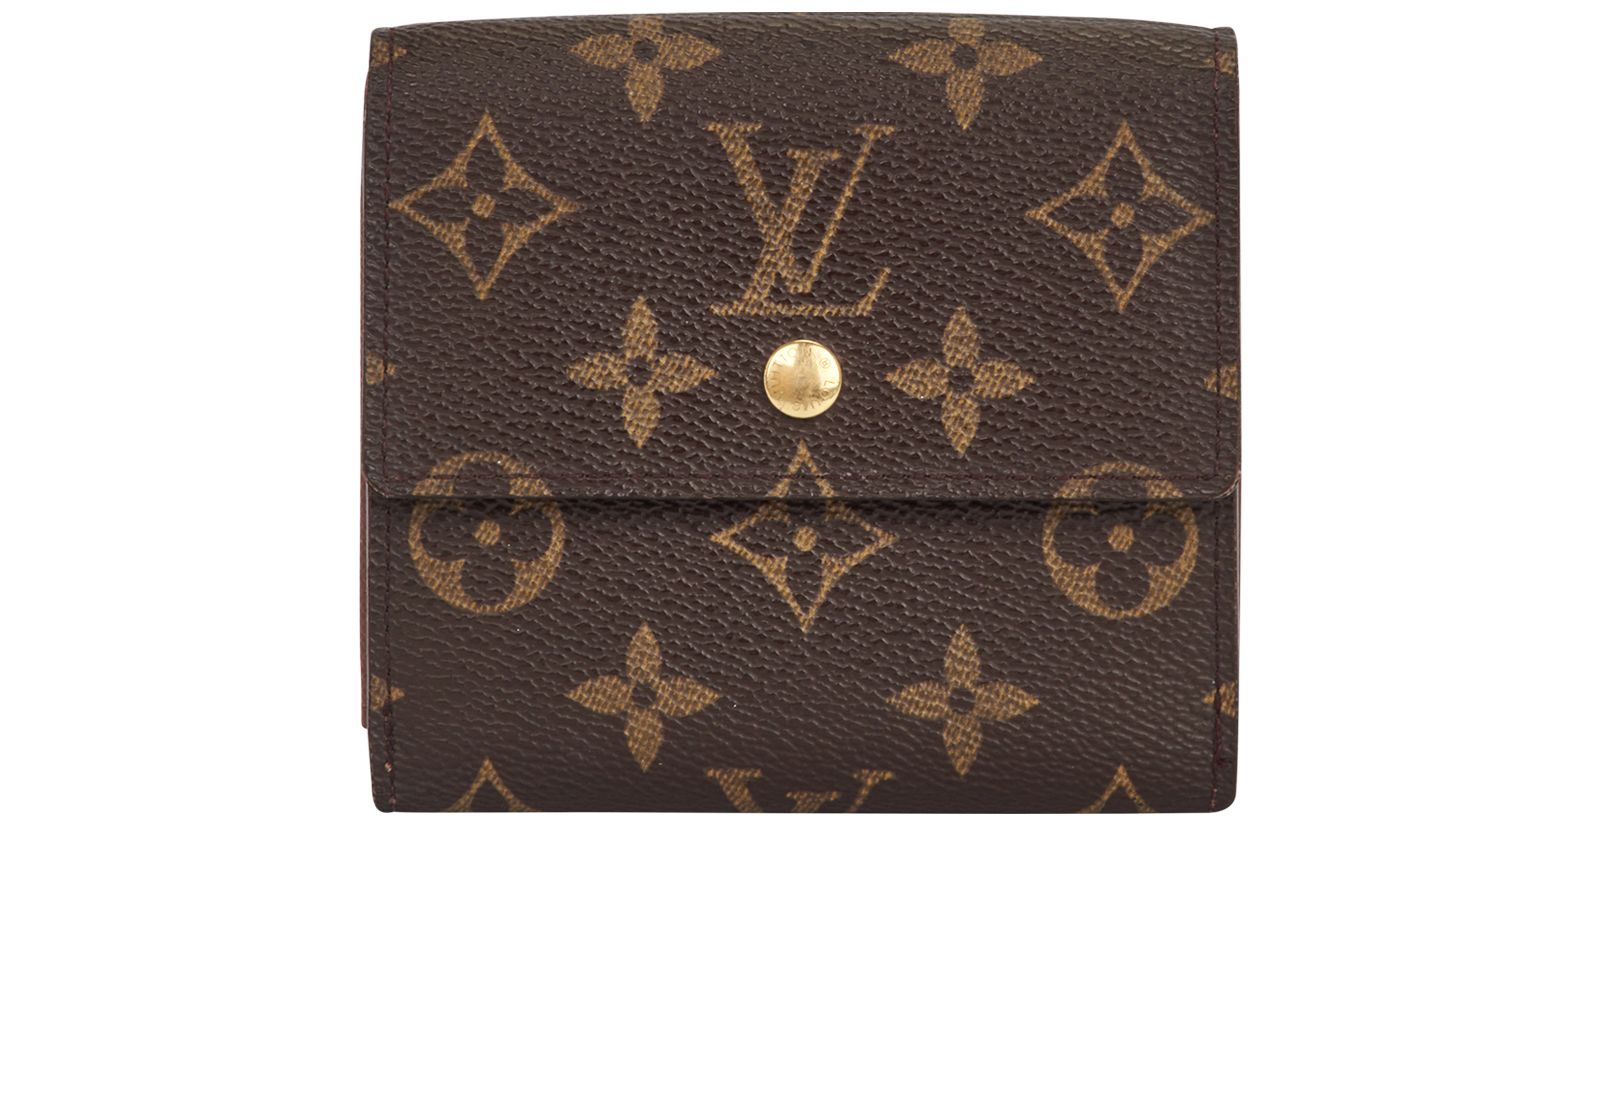 Vintage Louis Vuitton Monogram Wallet - Shop Accessories - Shop